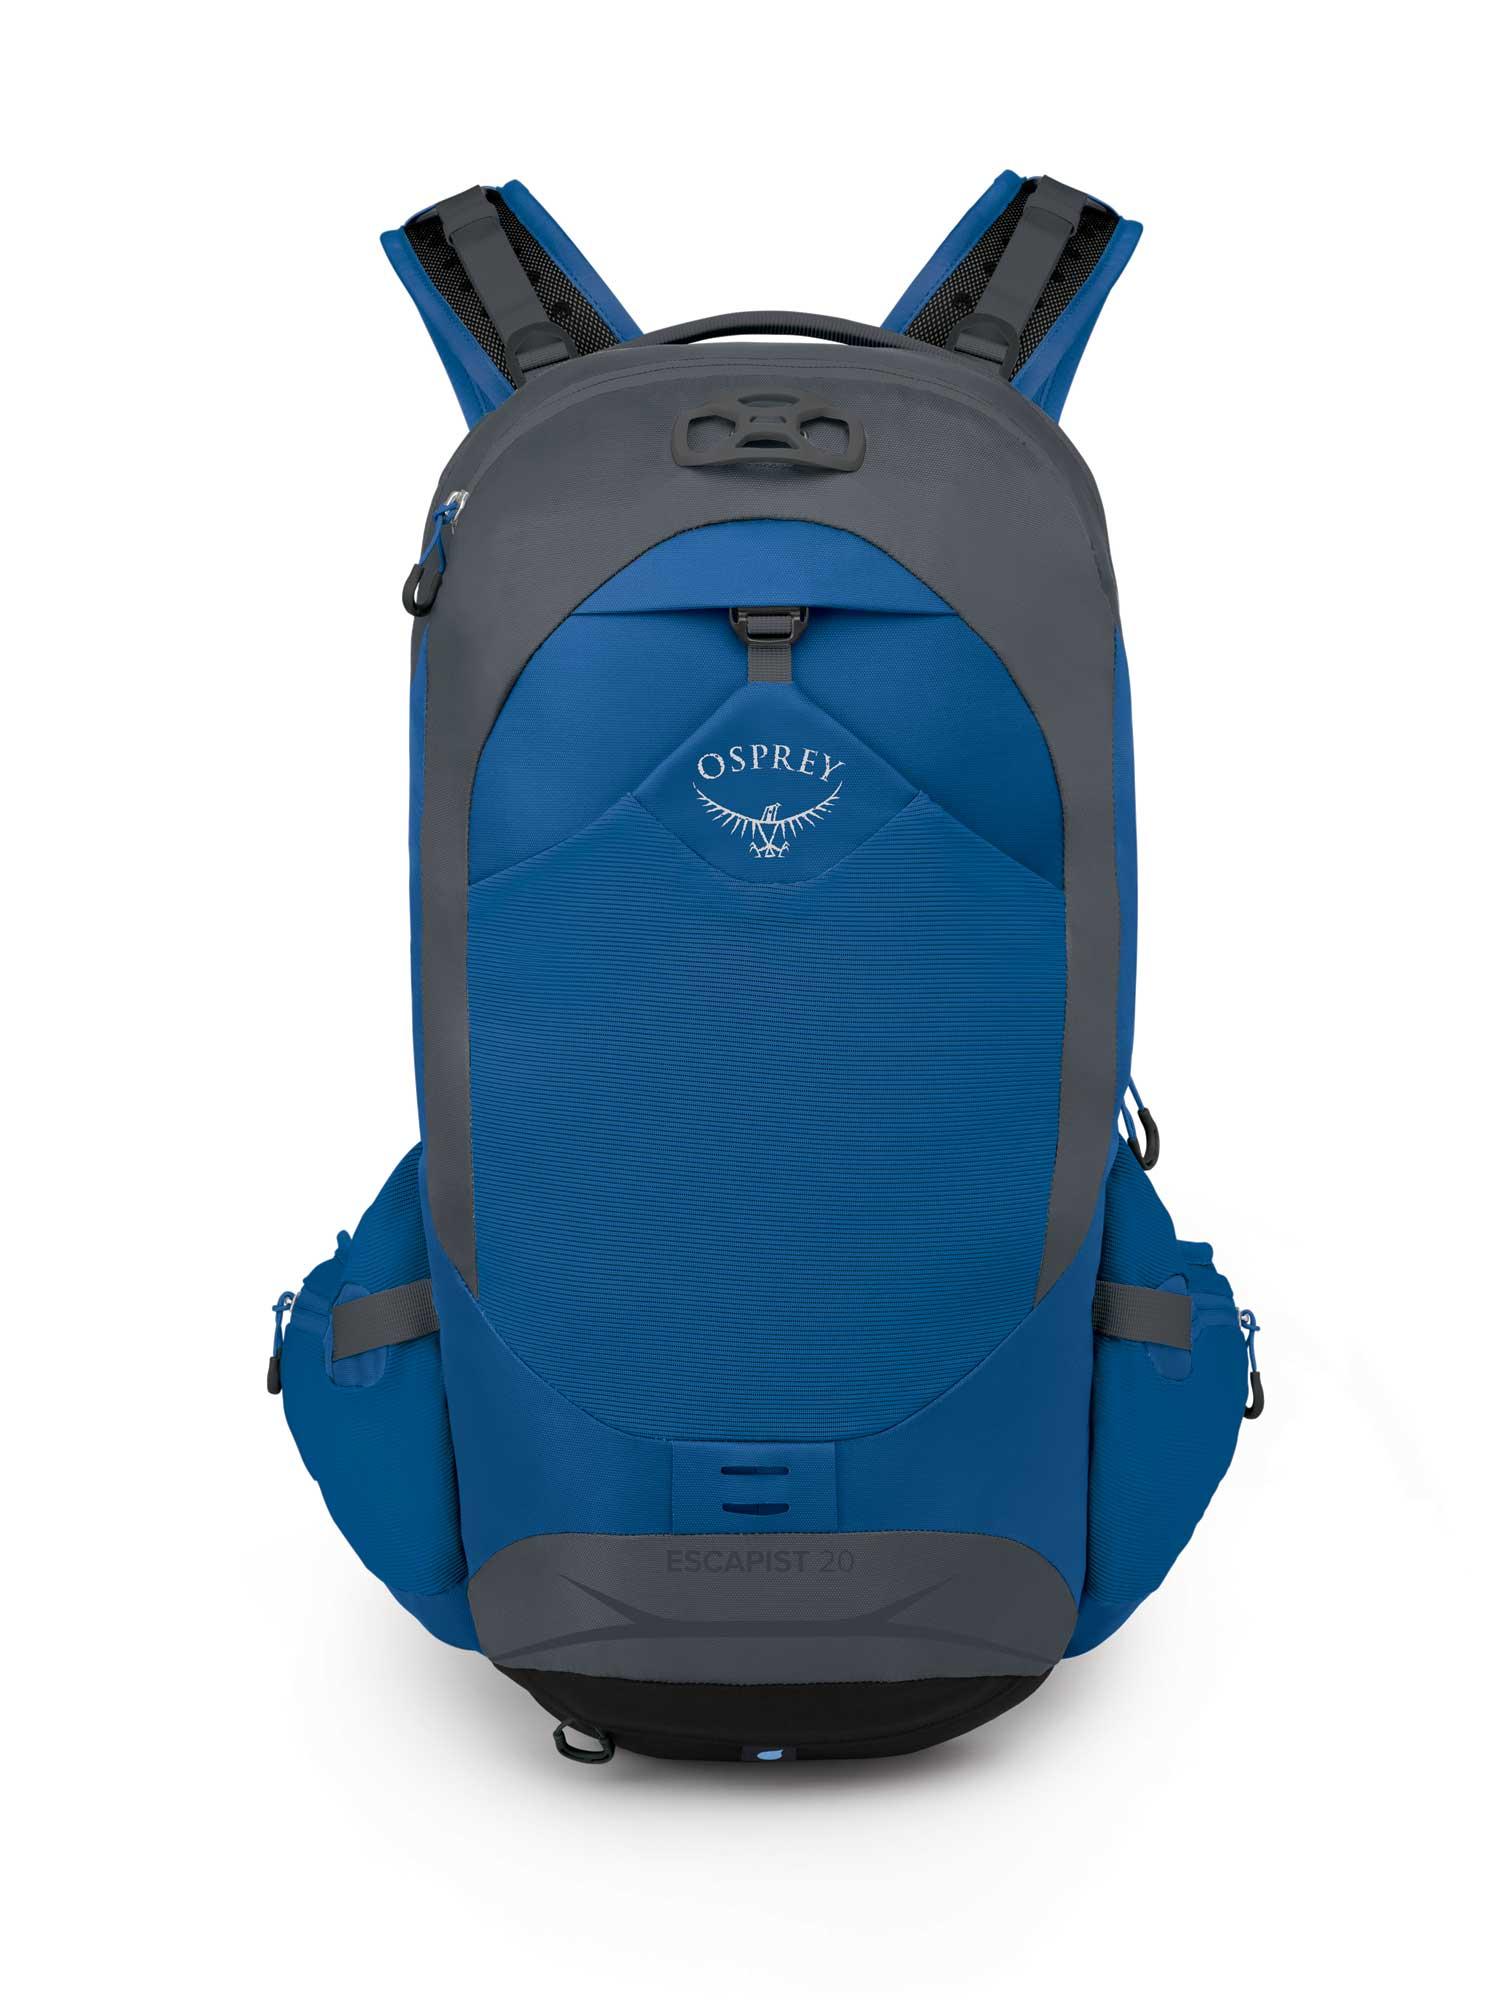 Selected image for OSPREY Ranac za biciklizam Escapist 20 Backpack plavi